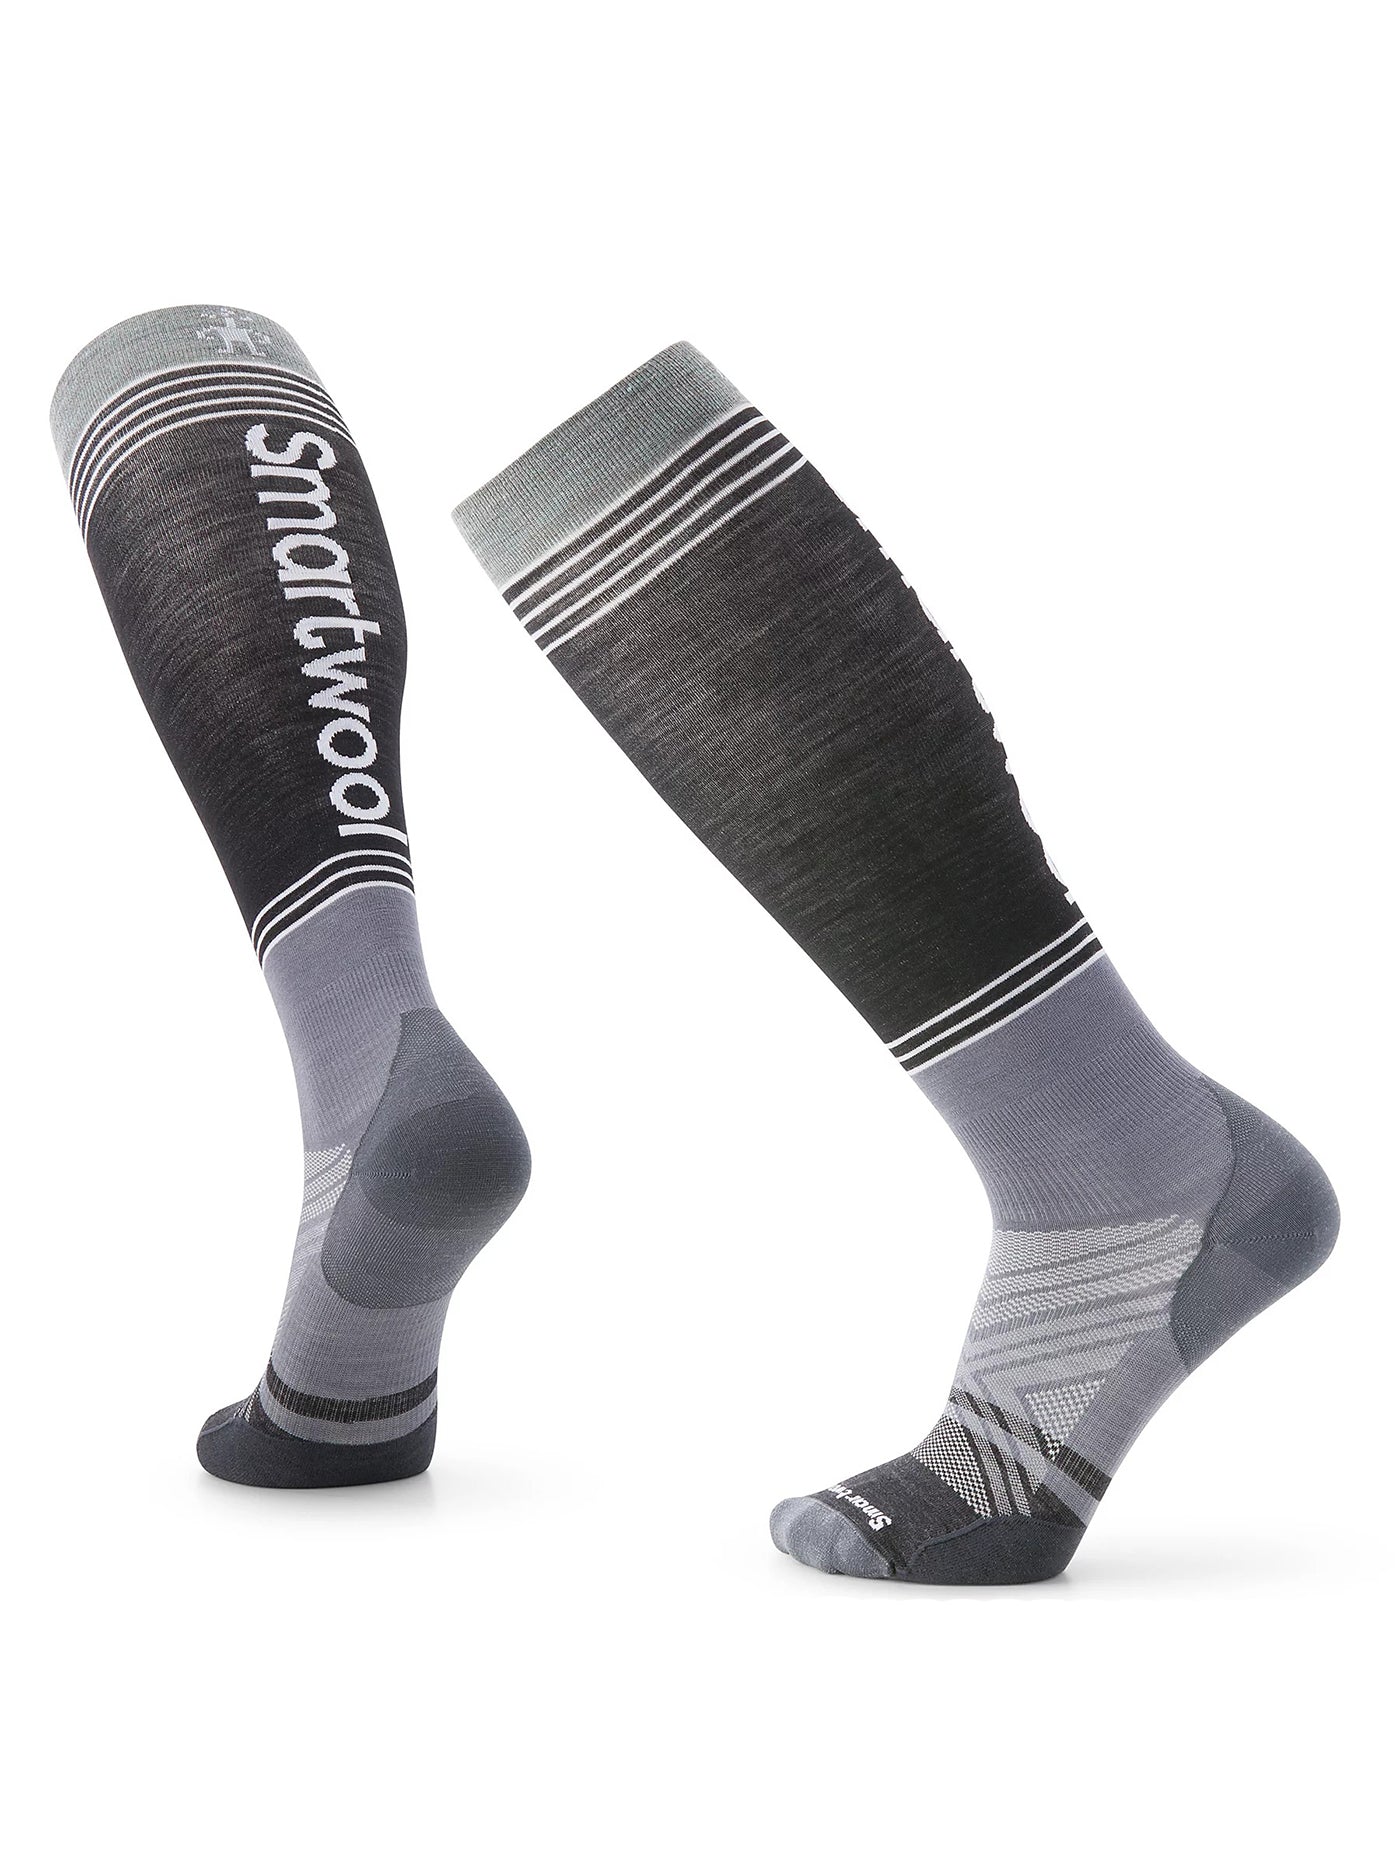 Stance Makaveli Snow OTC Socks (Large, Black)